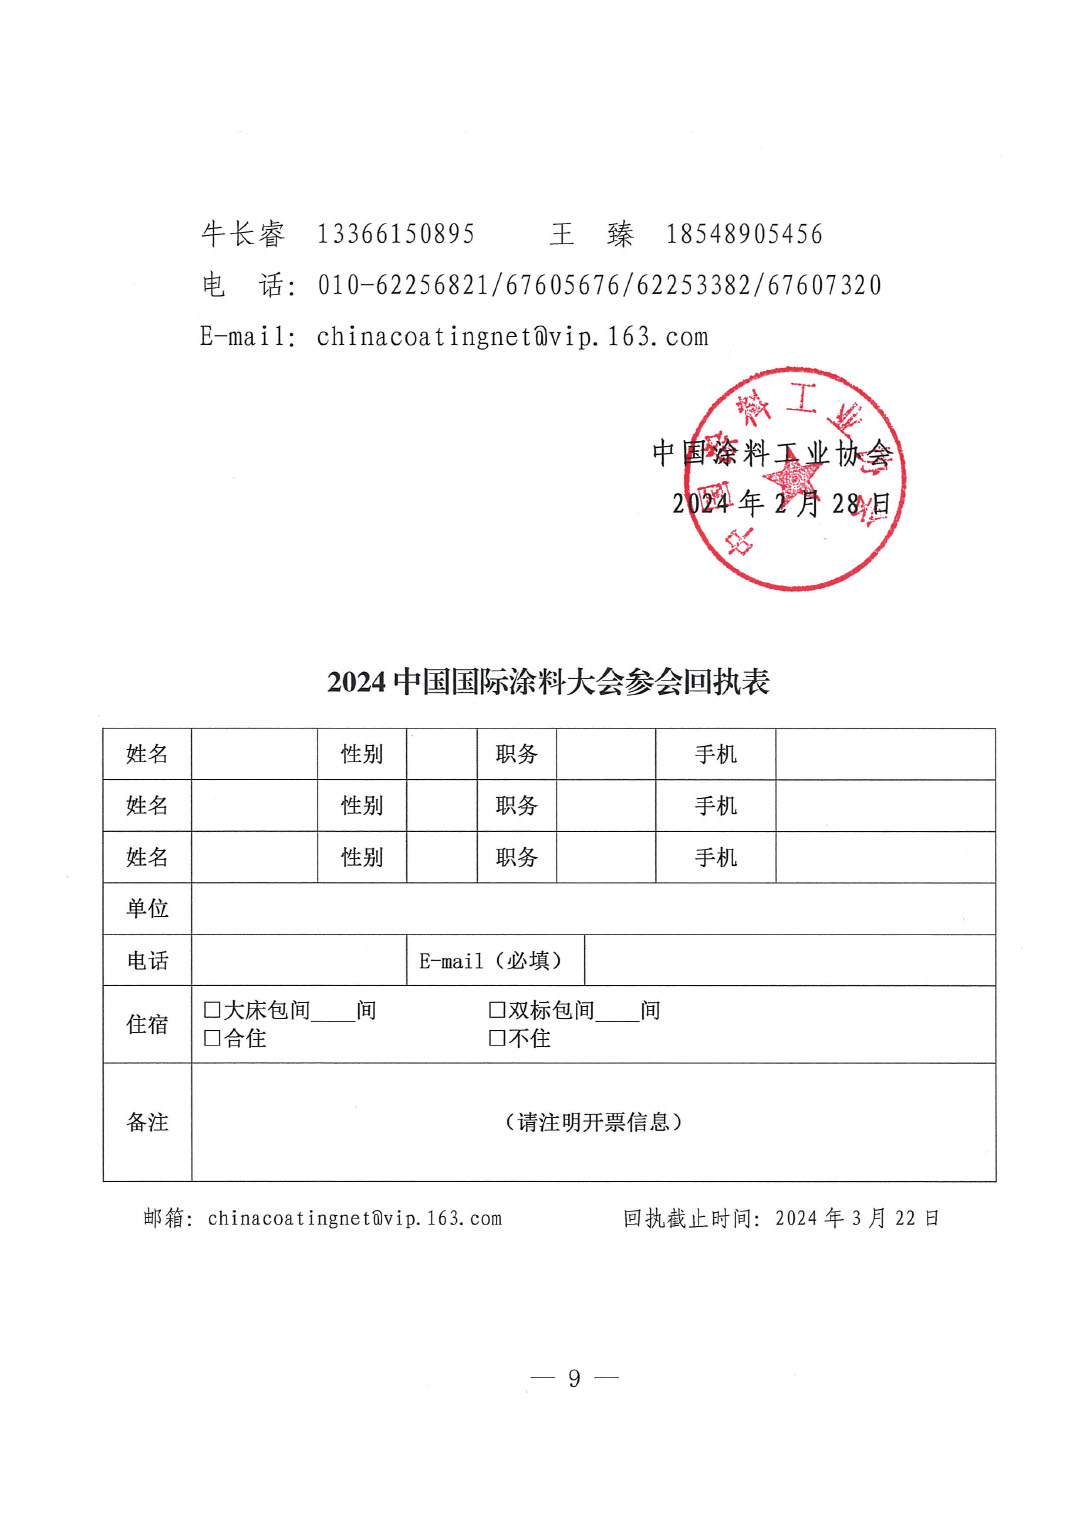 2024中國國際涂料大會通知0228-9